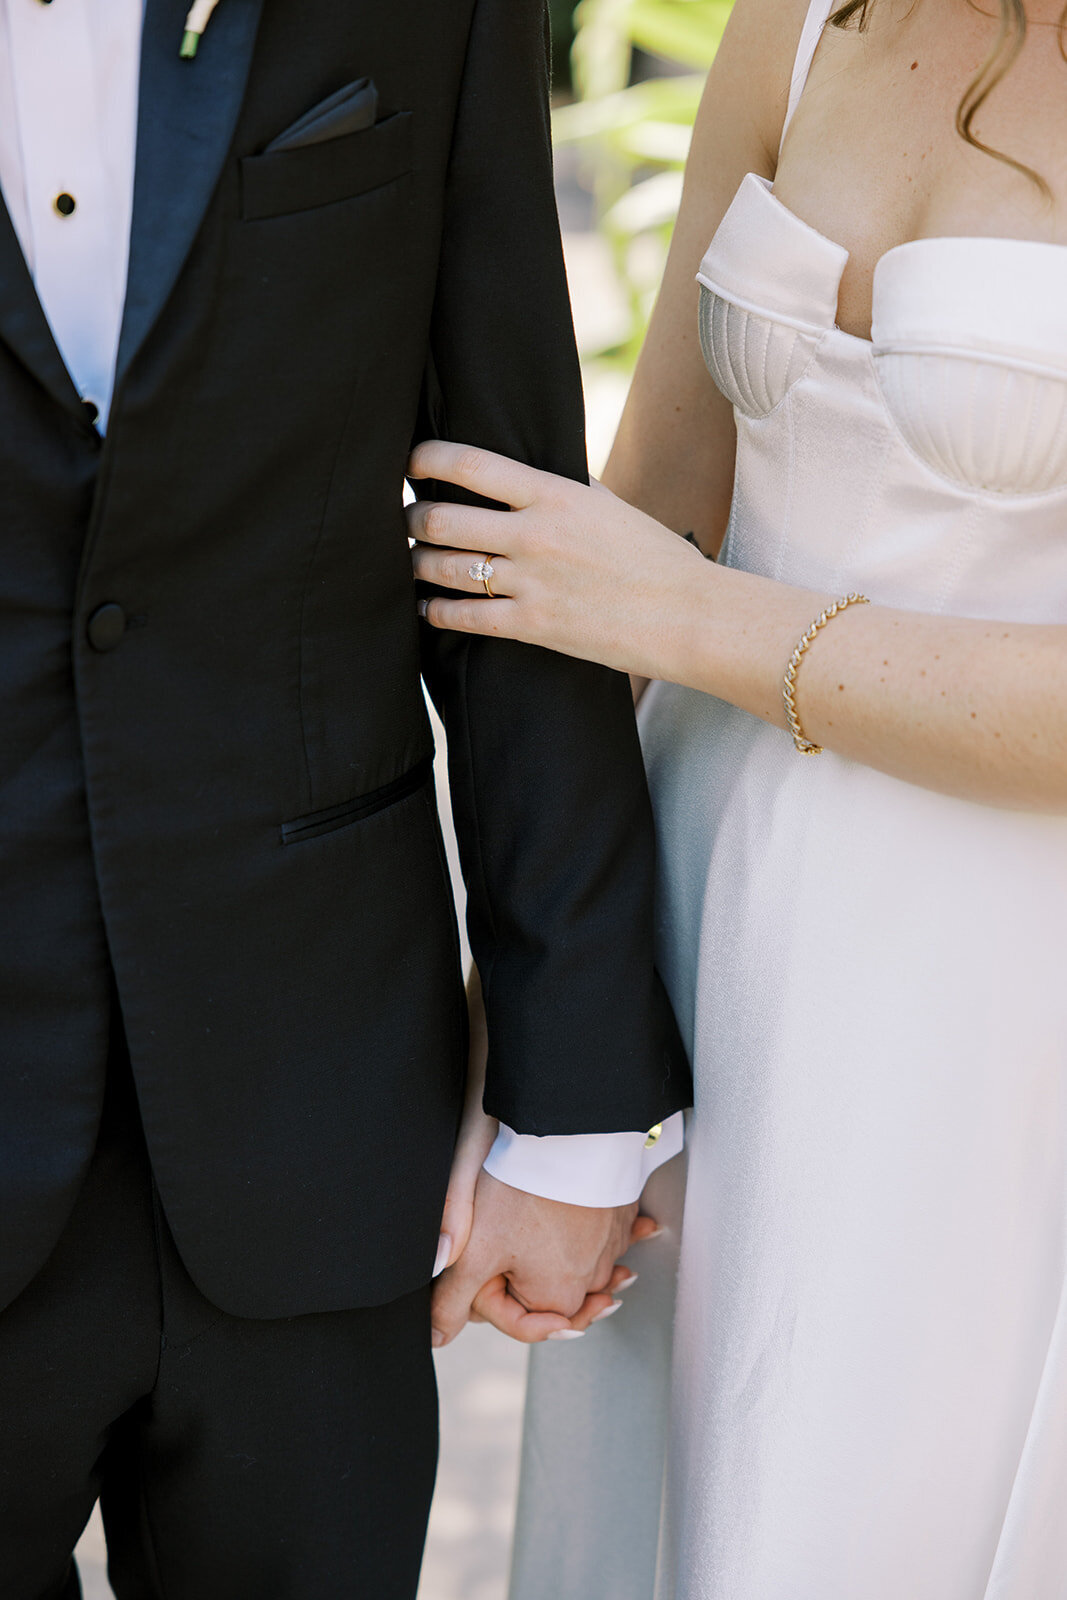 CORNELIA ZAISS PHOTOGRAPHY COURTNEY + ANDREW WEDDING 0474_websize